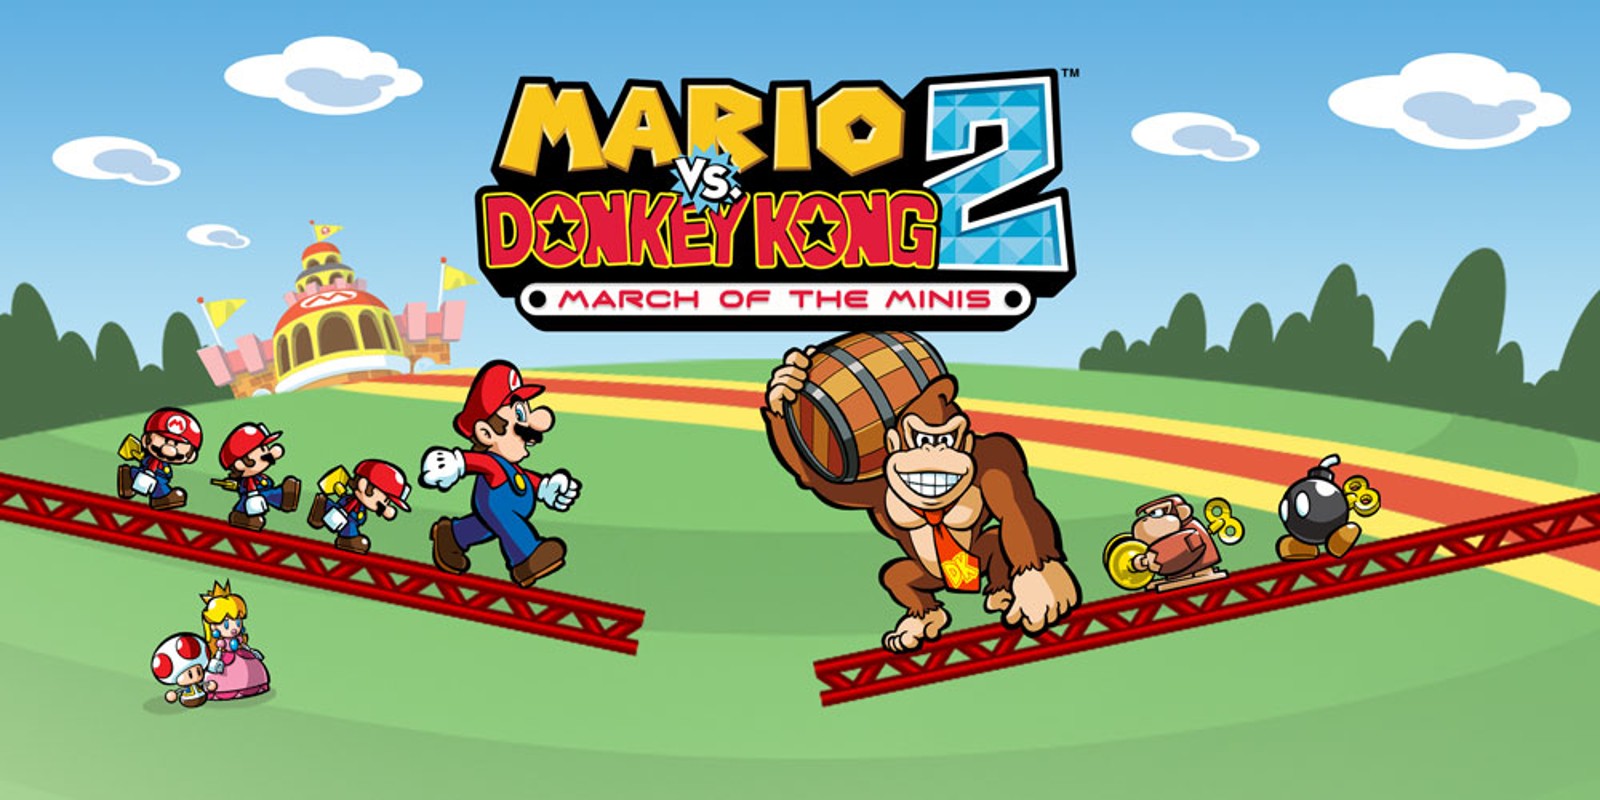 Mario vs donkey kong games videos